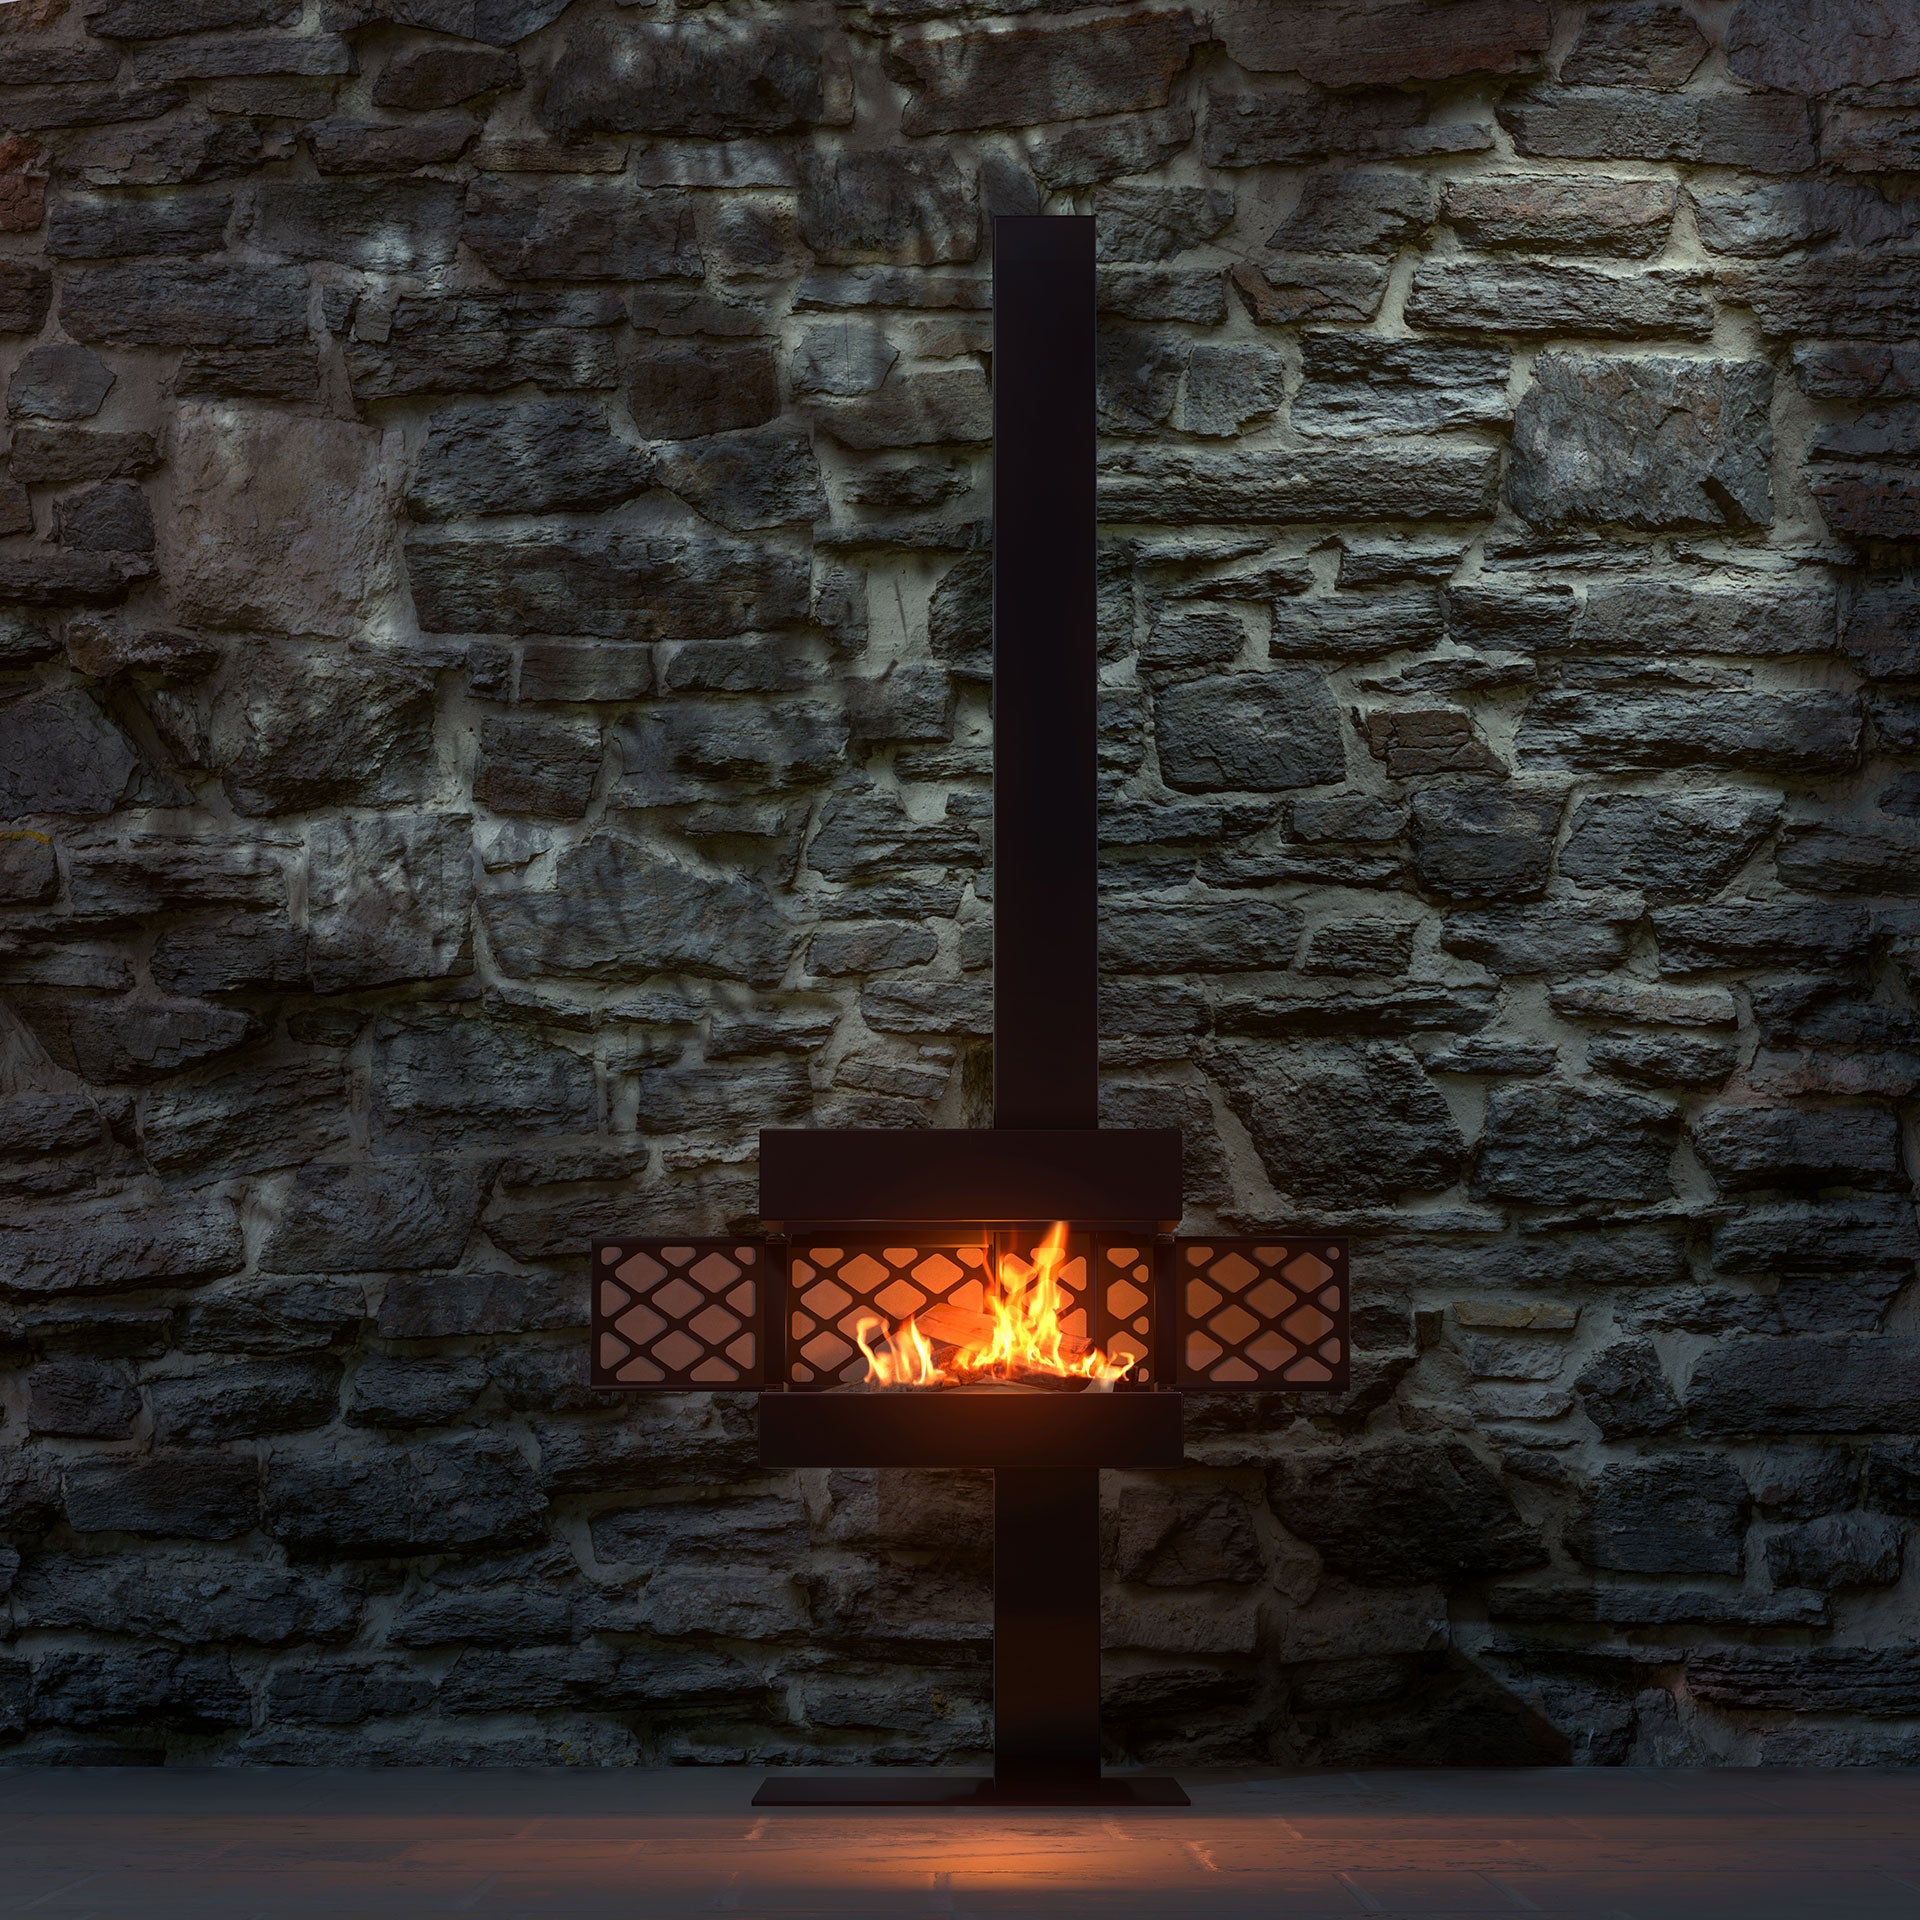 Der Gartenkamin von dyook brennt, die Kaminklappen sind seitlich geöffnet. Die Feuerstelle steht vor einer Steinwand auf einer Terrasse.